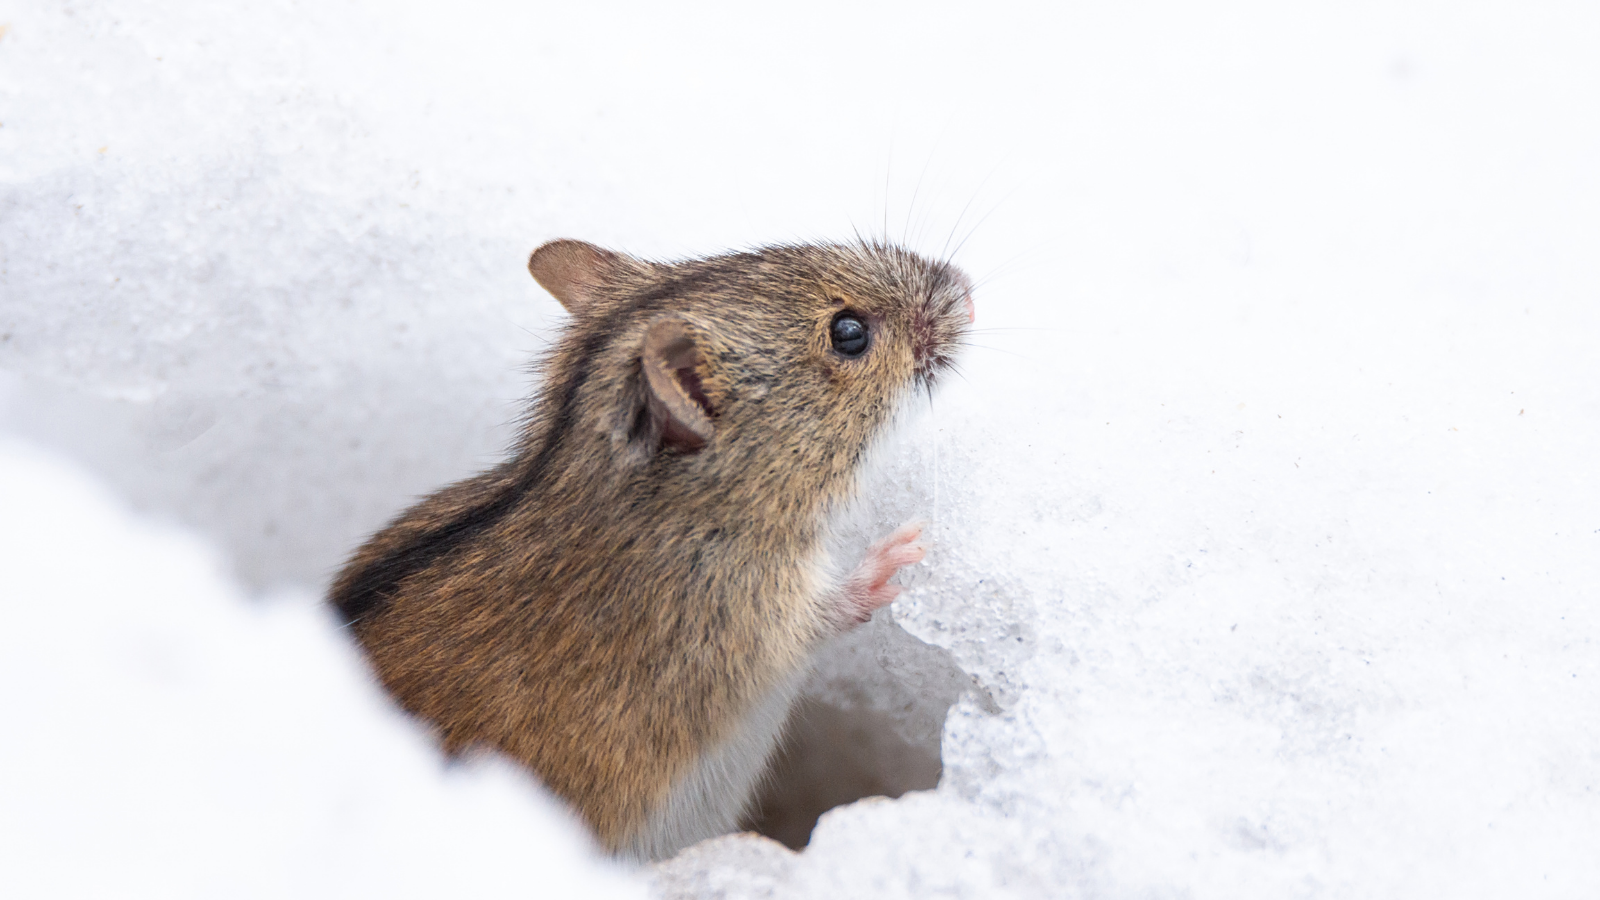 Тихо возится под снегом робкая мышь